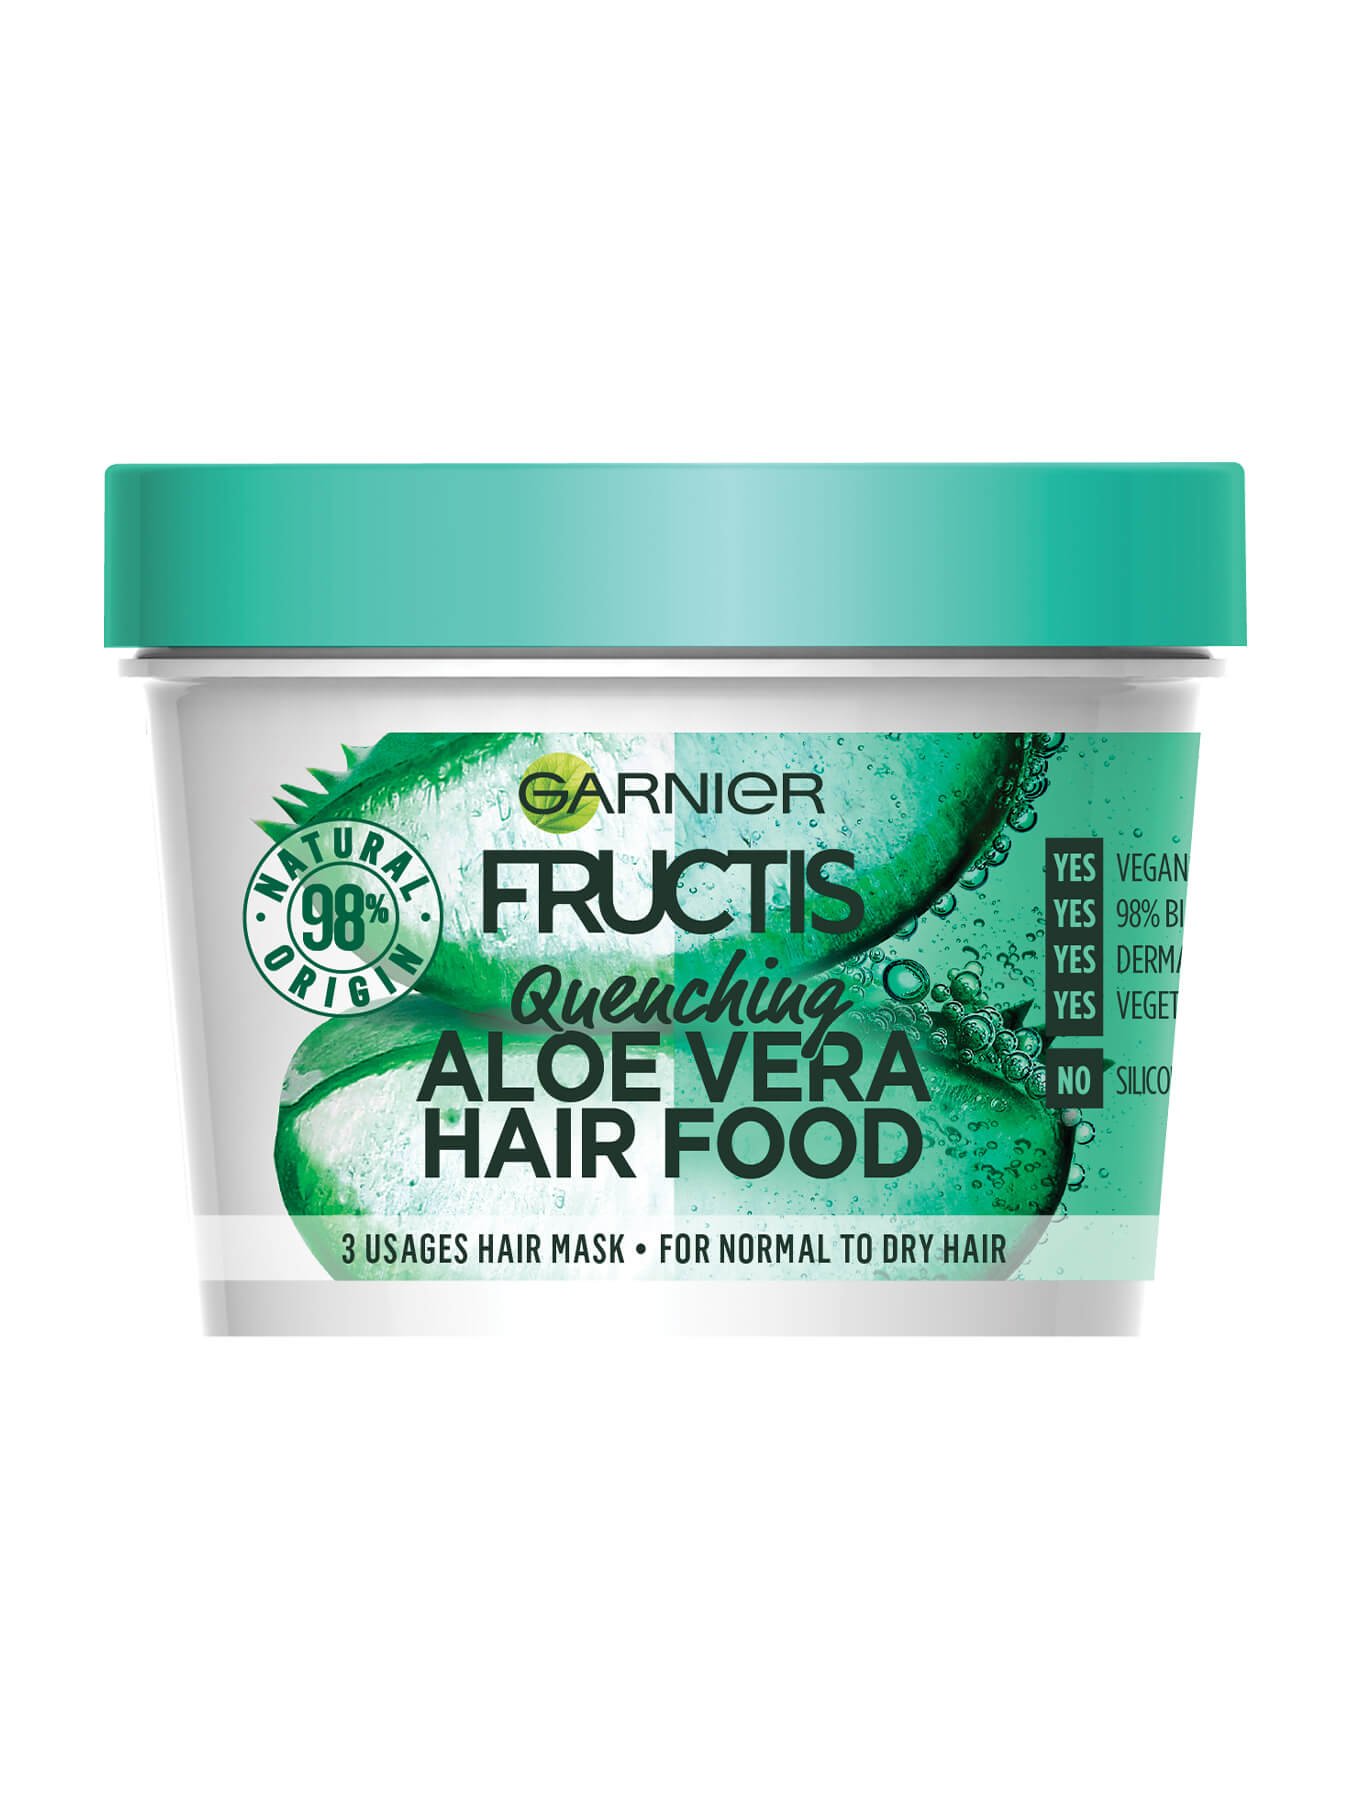 Fructis Hair Food Maska za Nehidratiziranu Kosu - Garnier